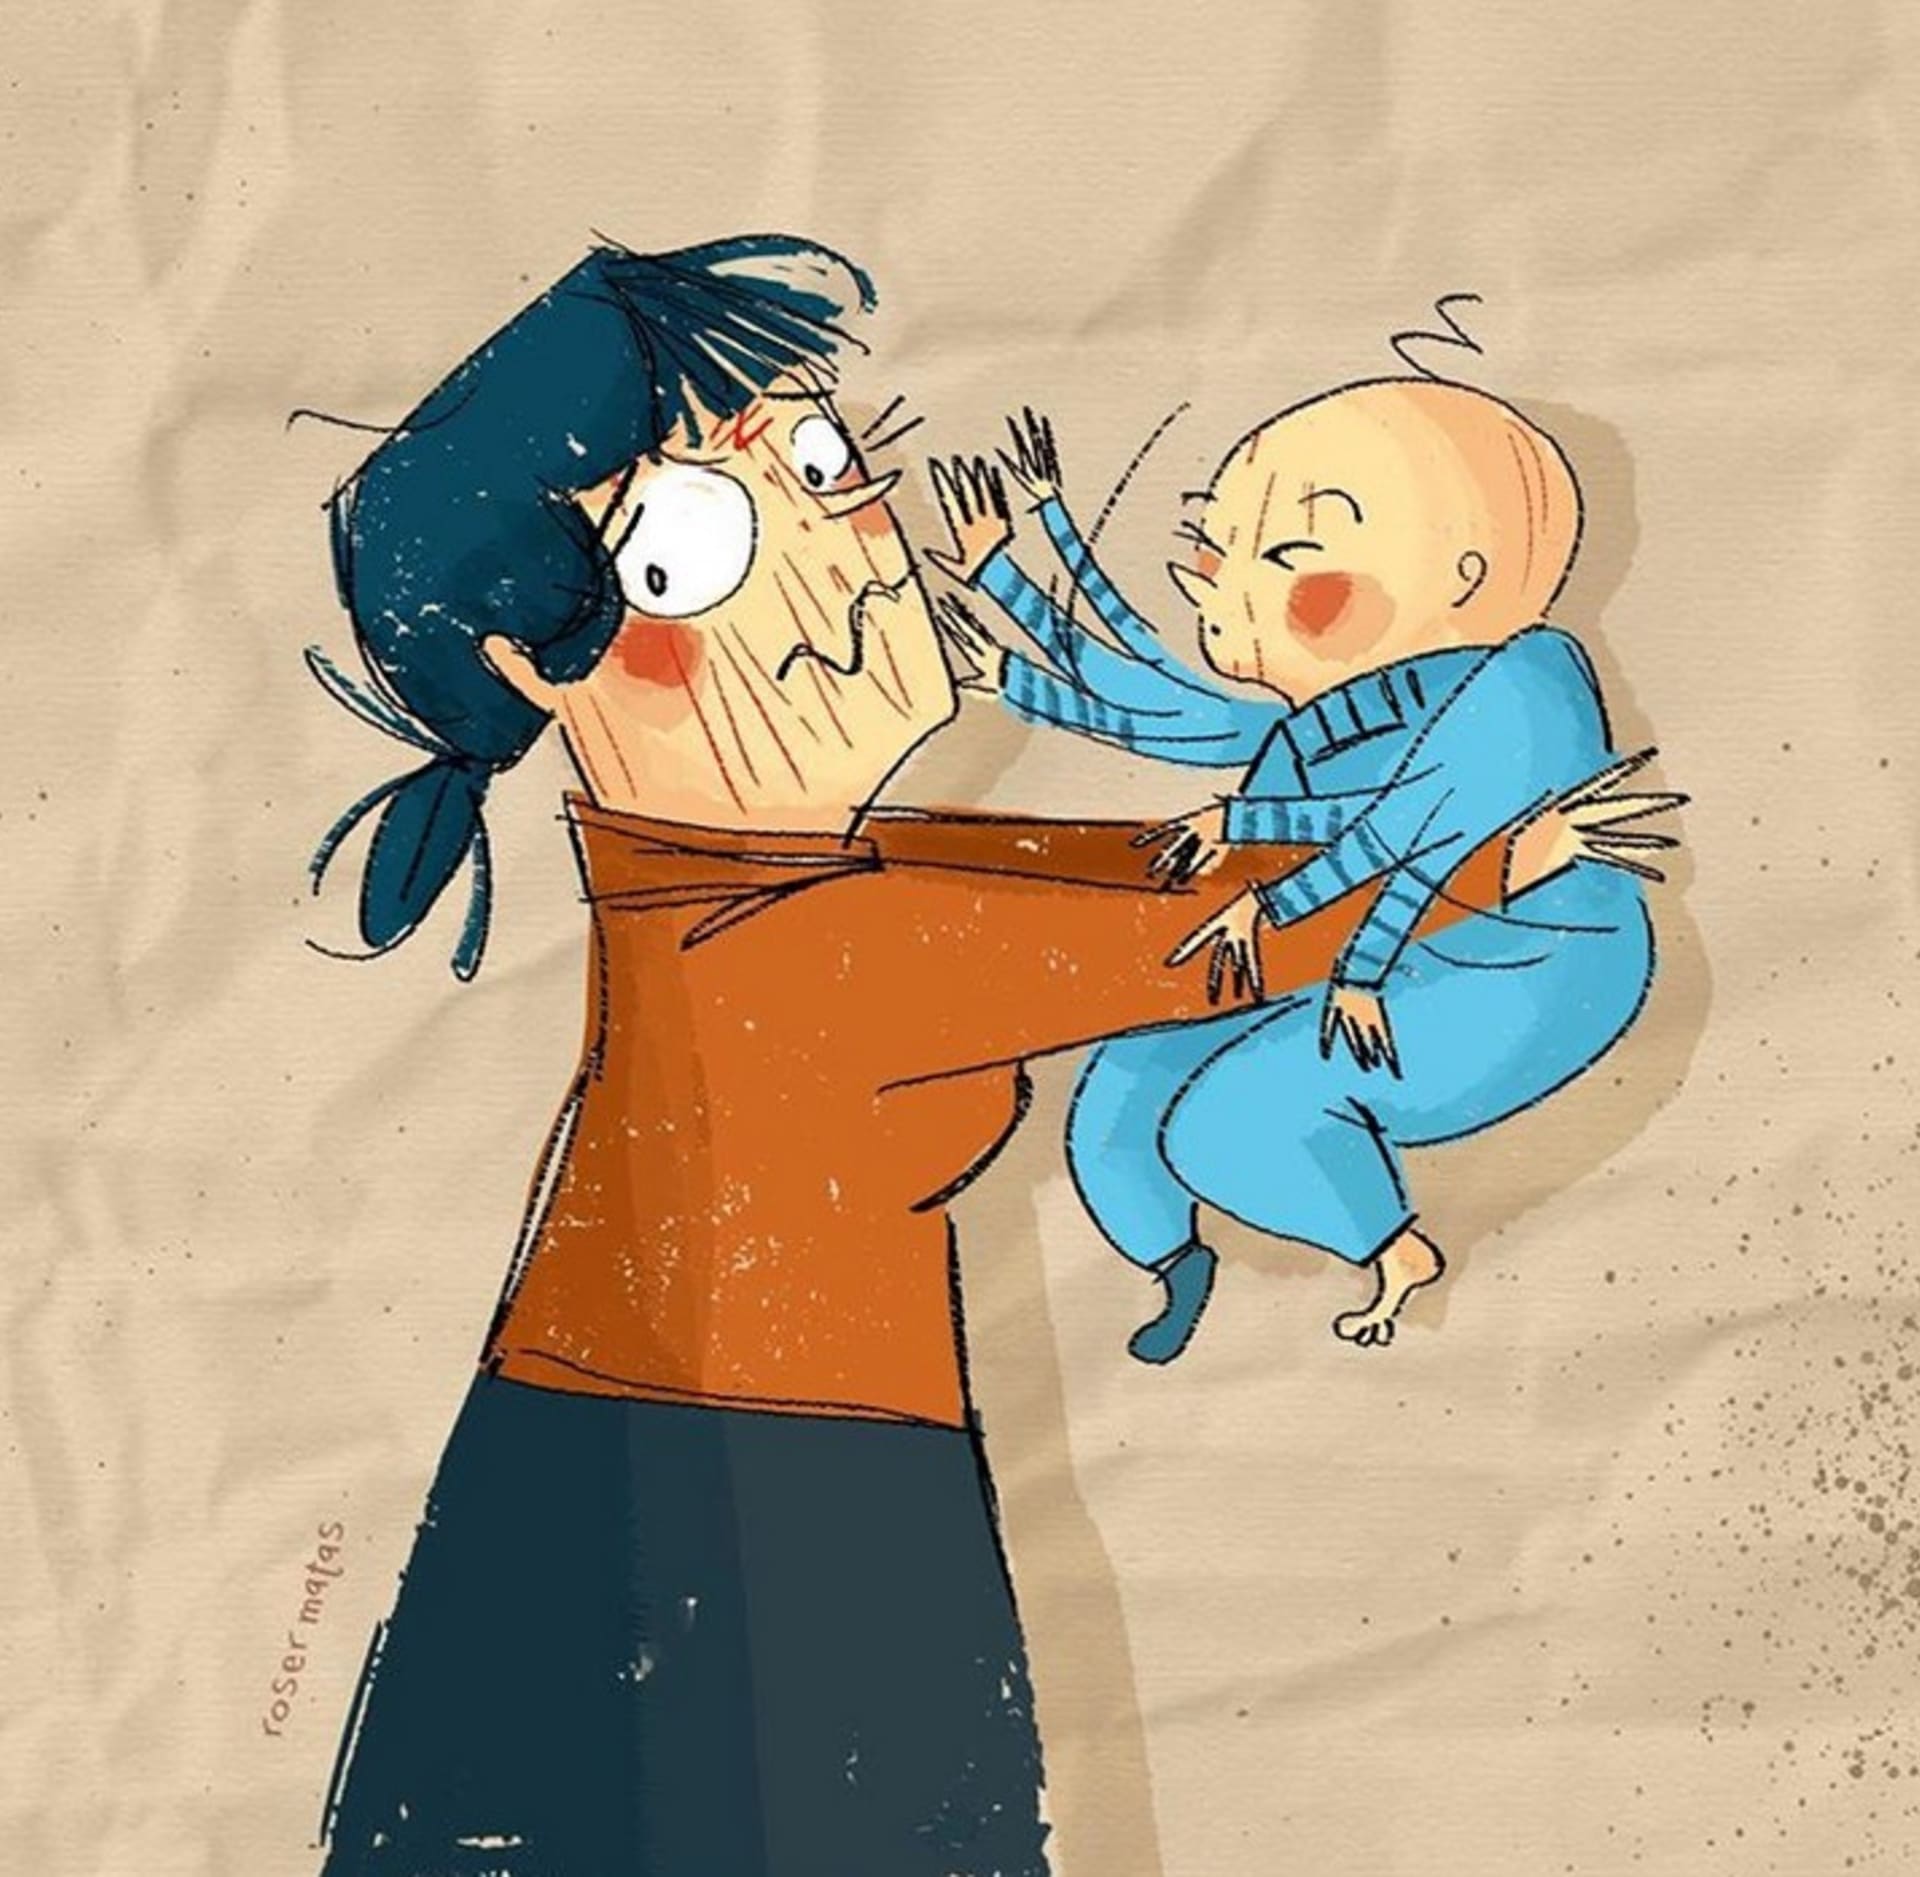 Vtipné ilustrace o těžkém životě matek.